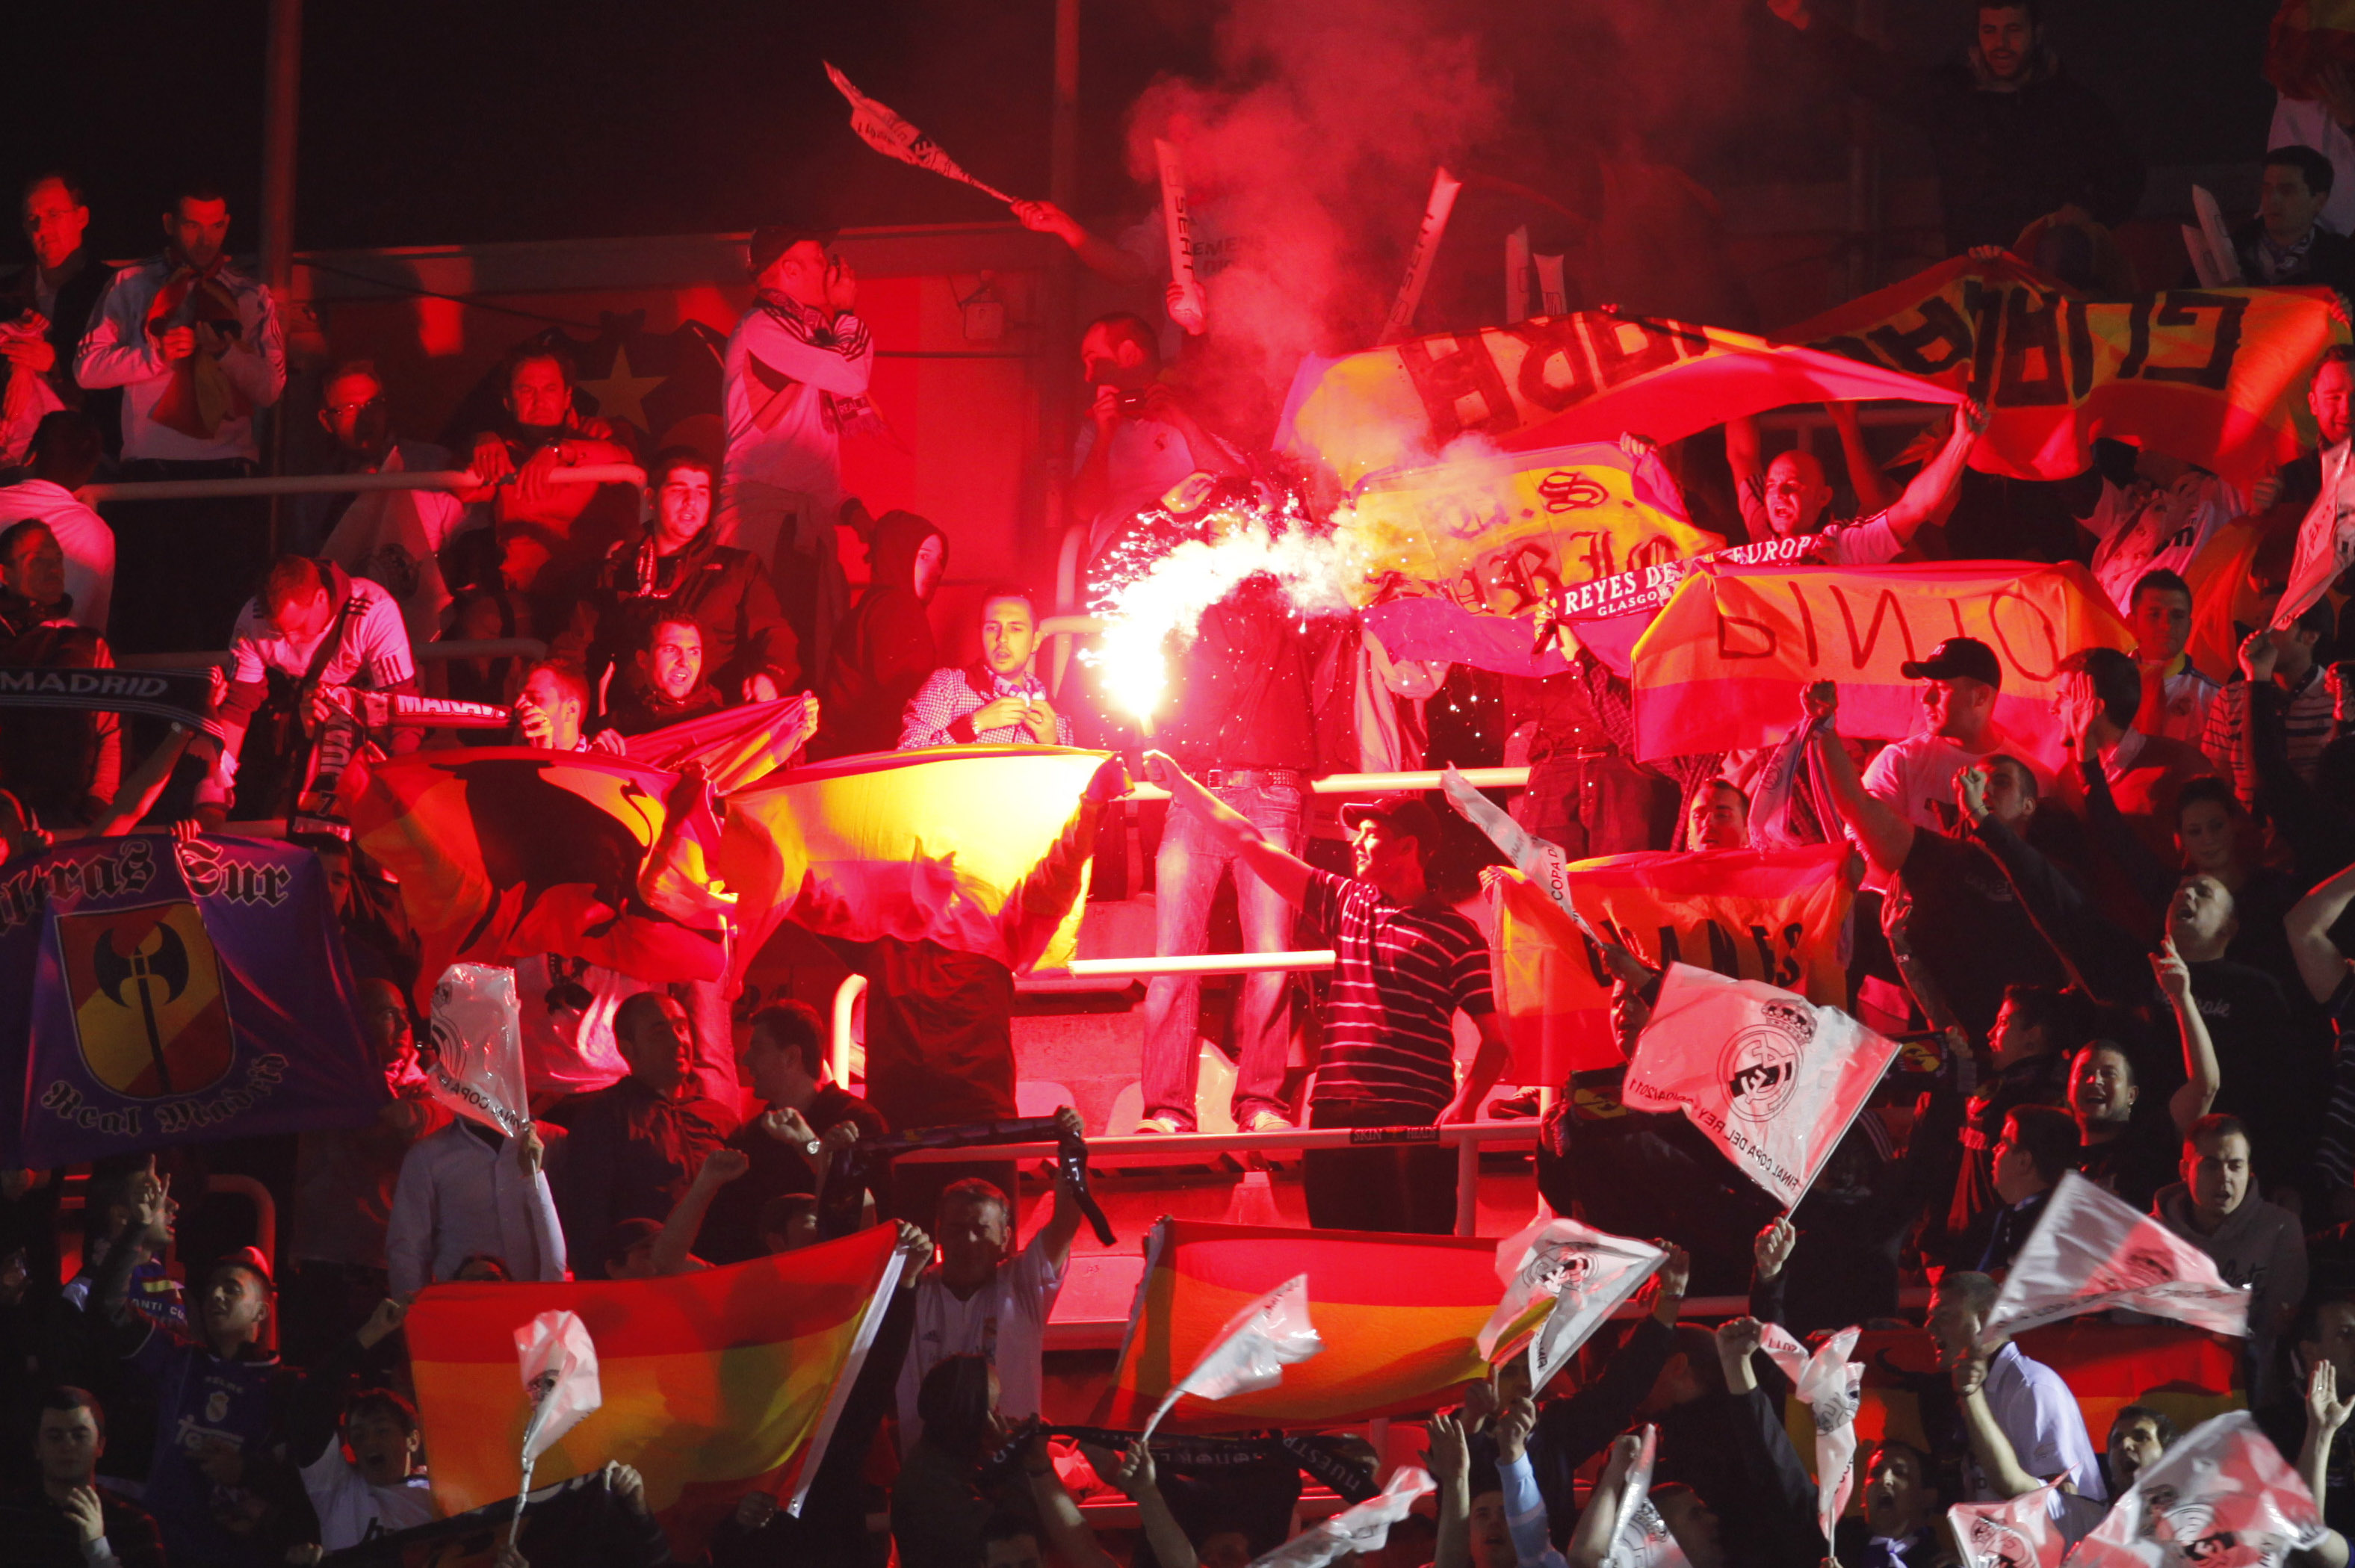 Copa del Rey-finalen mellan Real Madrid och Barcelona spelades på Mestalla våren 2011.